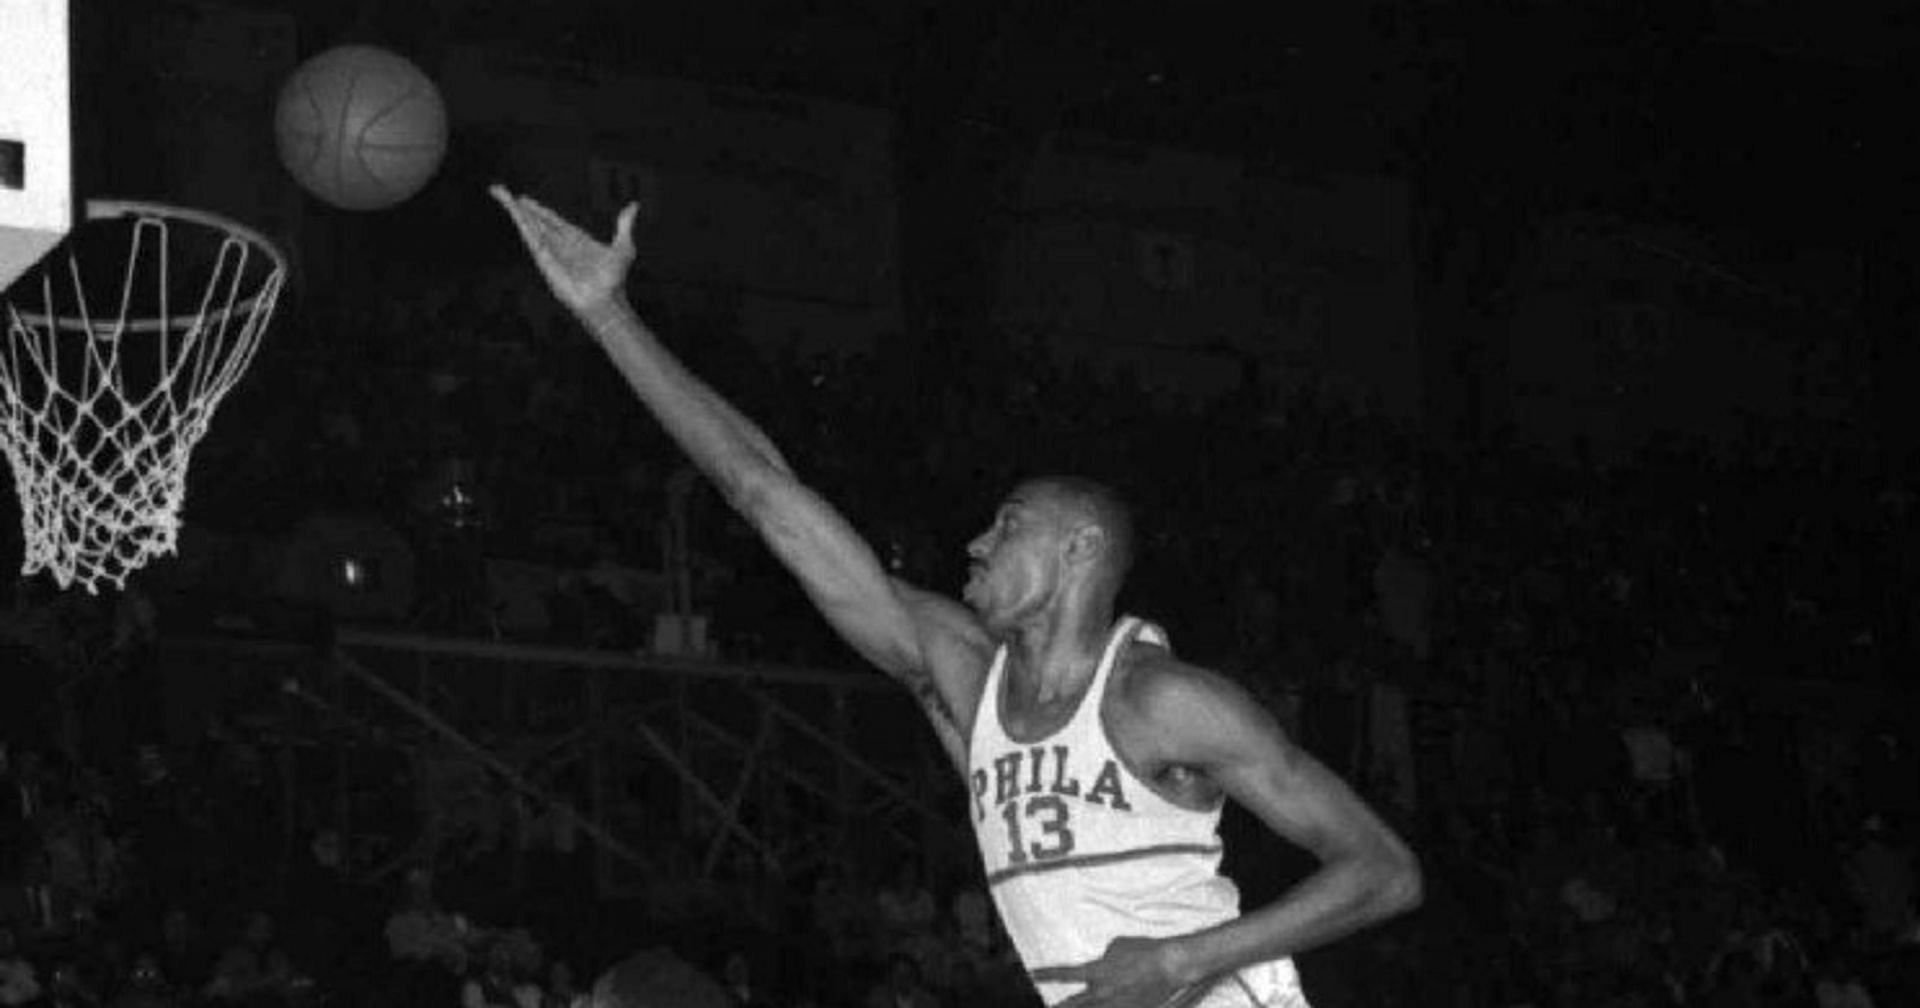 Wilt Chamberlain scoring a basket during his playing days.